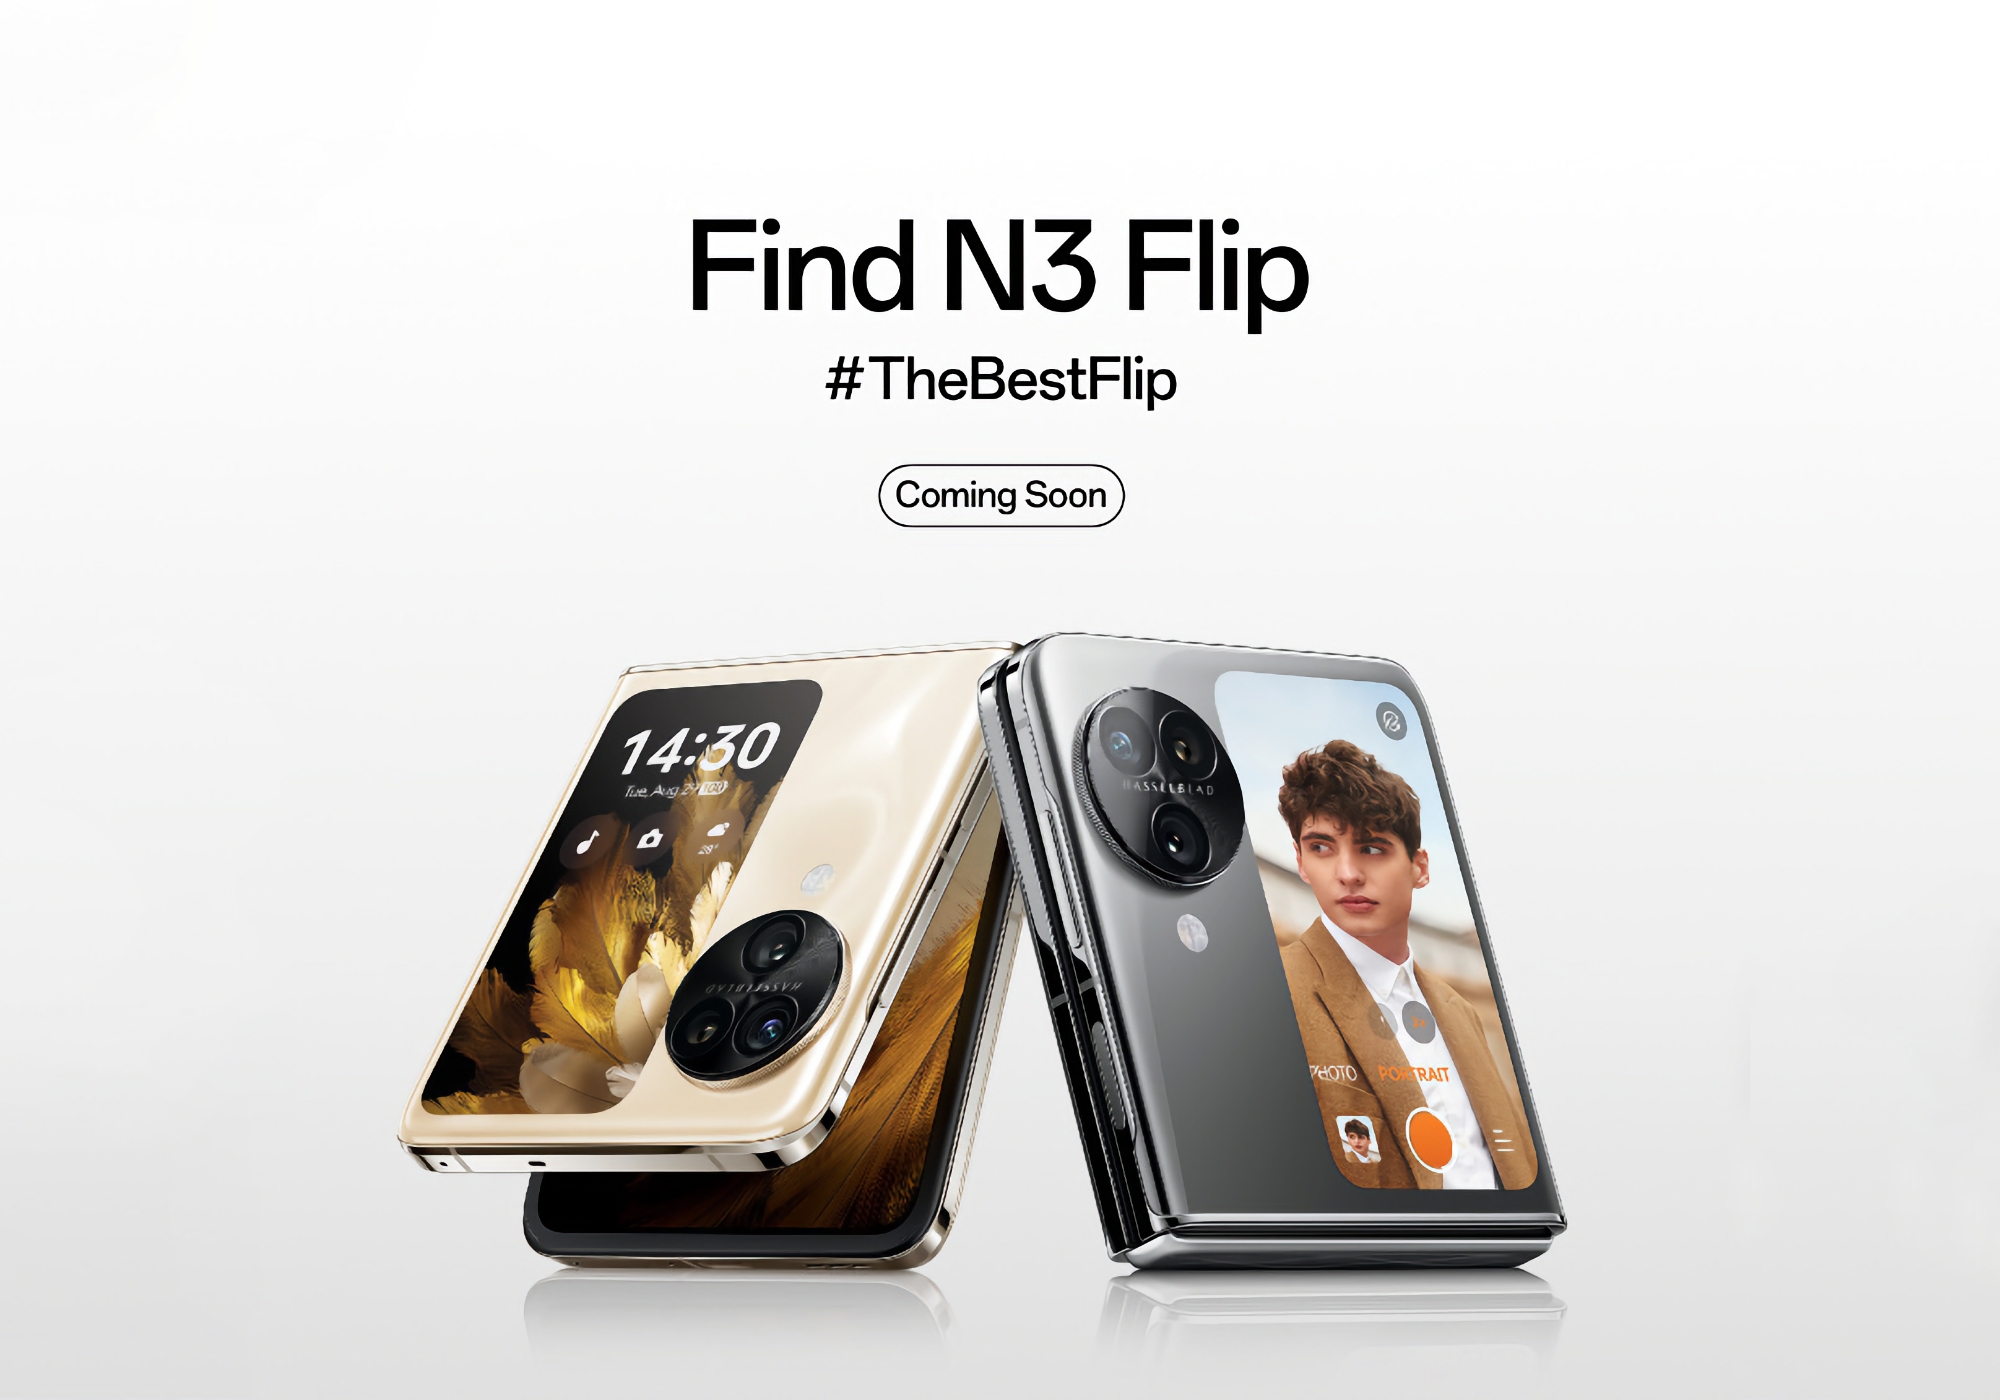 OPPO rozpoczęło teaser globalnej premiery Find N3 Flip, spodziewaj się nowego produktu w tym miesiącu